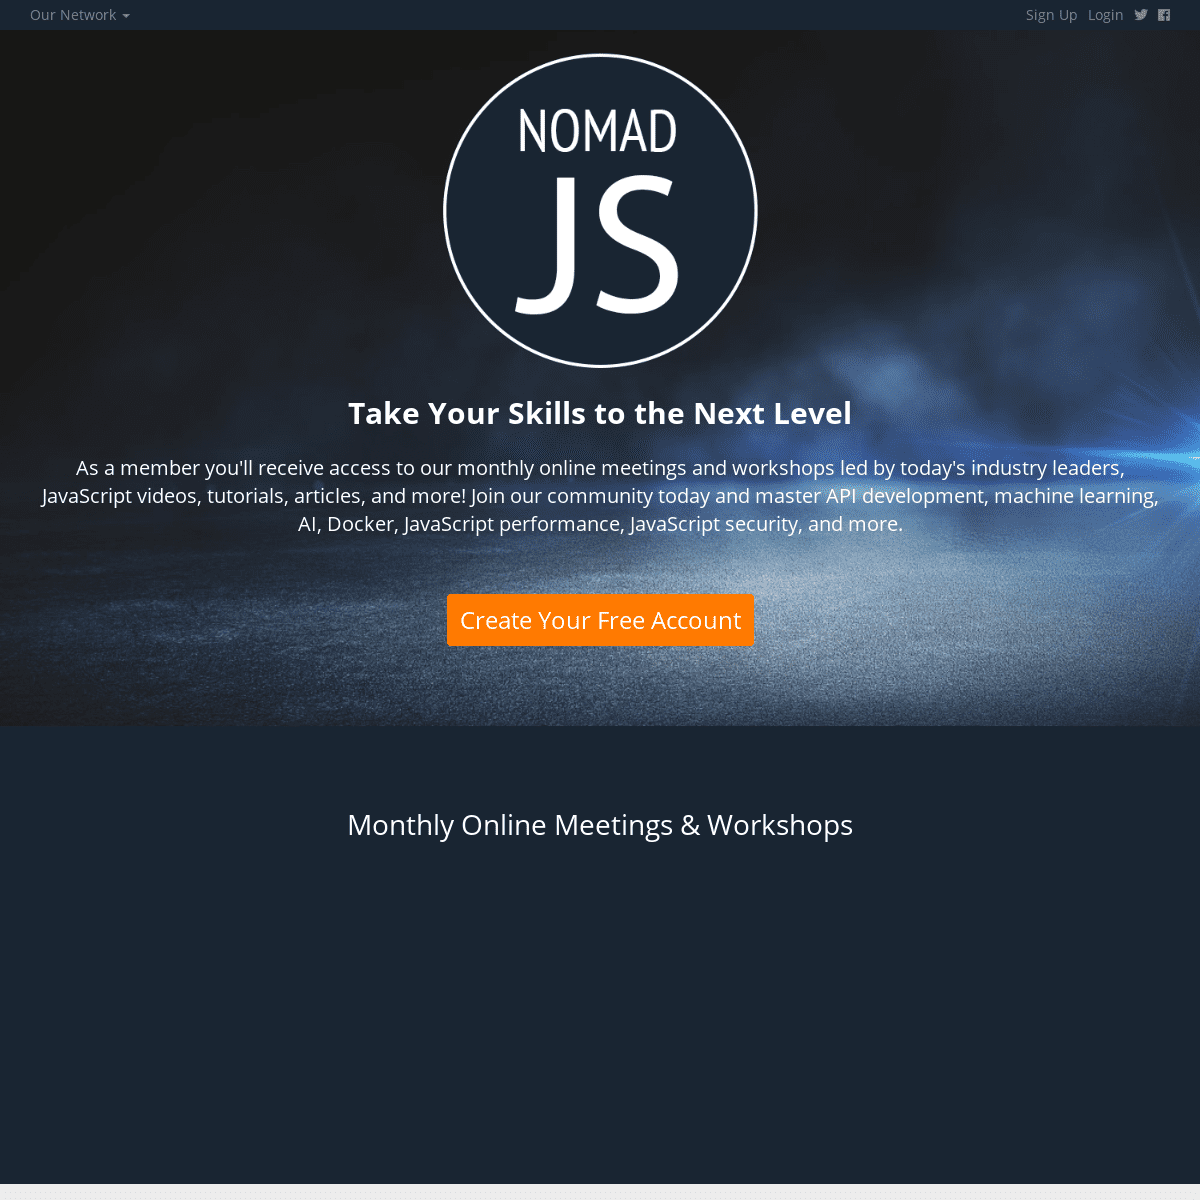 A complete backup of https://nomadjs.com